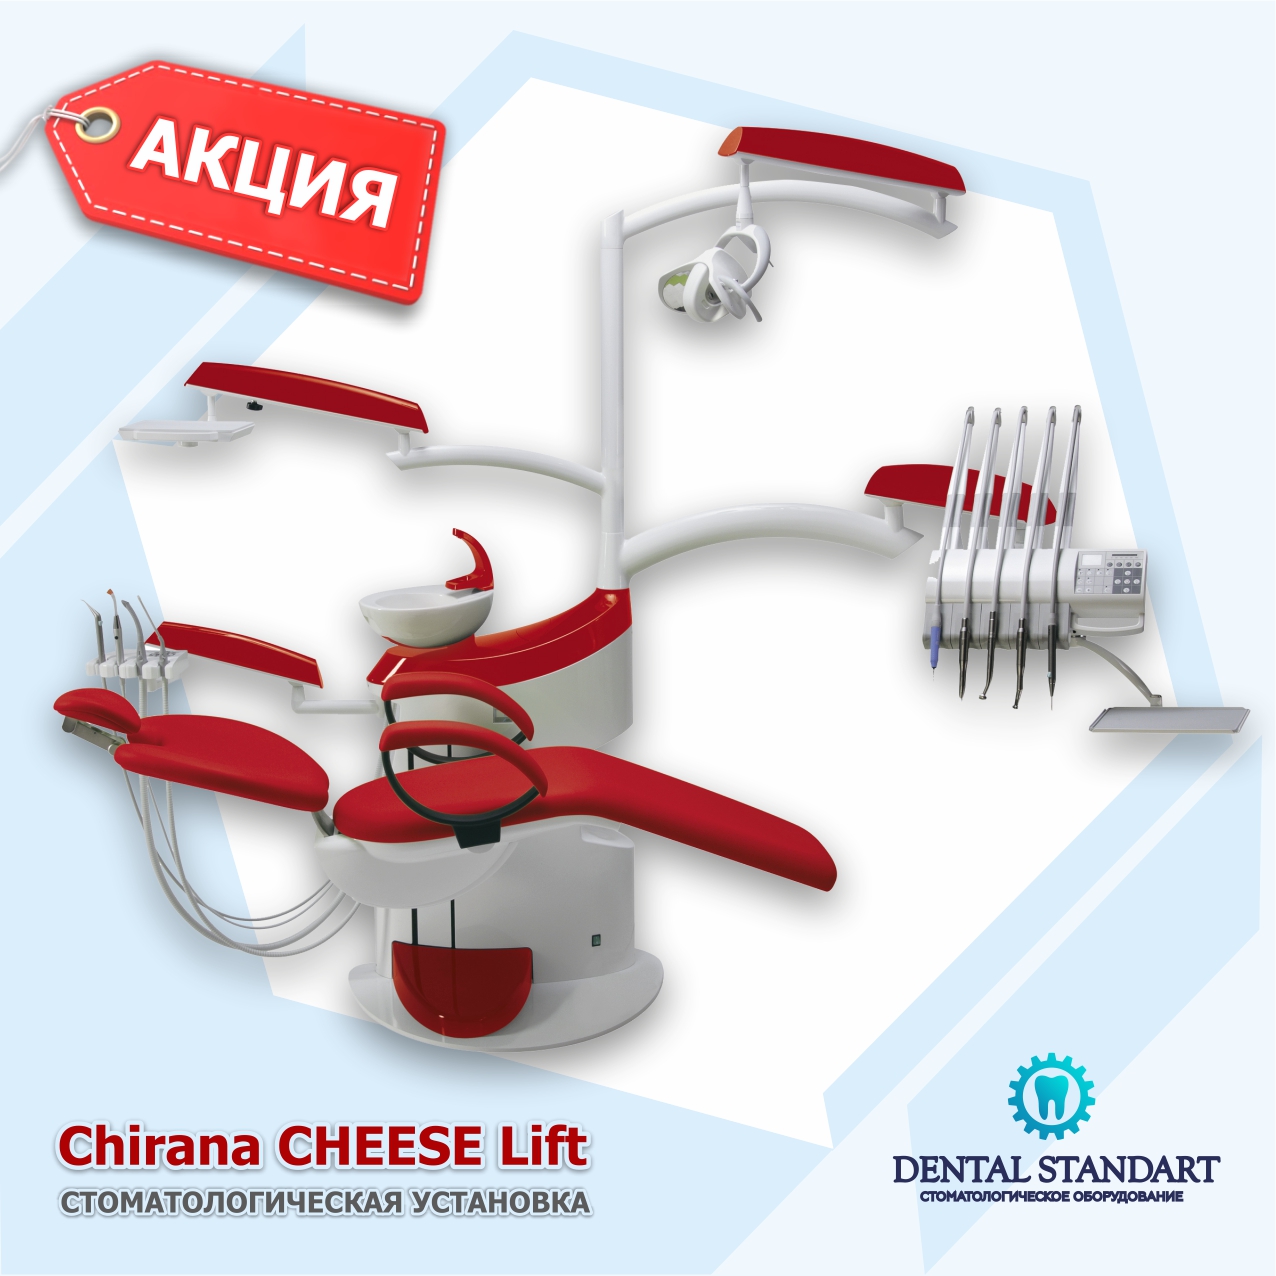 Стоматологическая установка Chirana CHEESE Lift. Стоматологическое оборудование в Краснодаре.